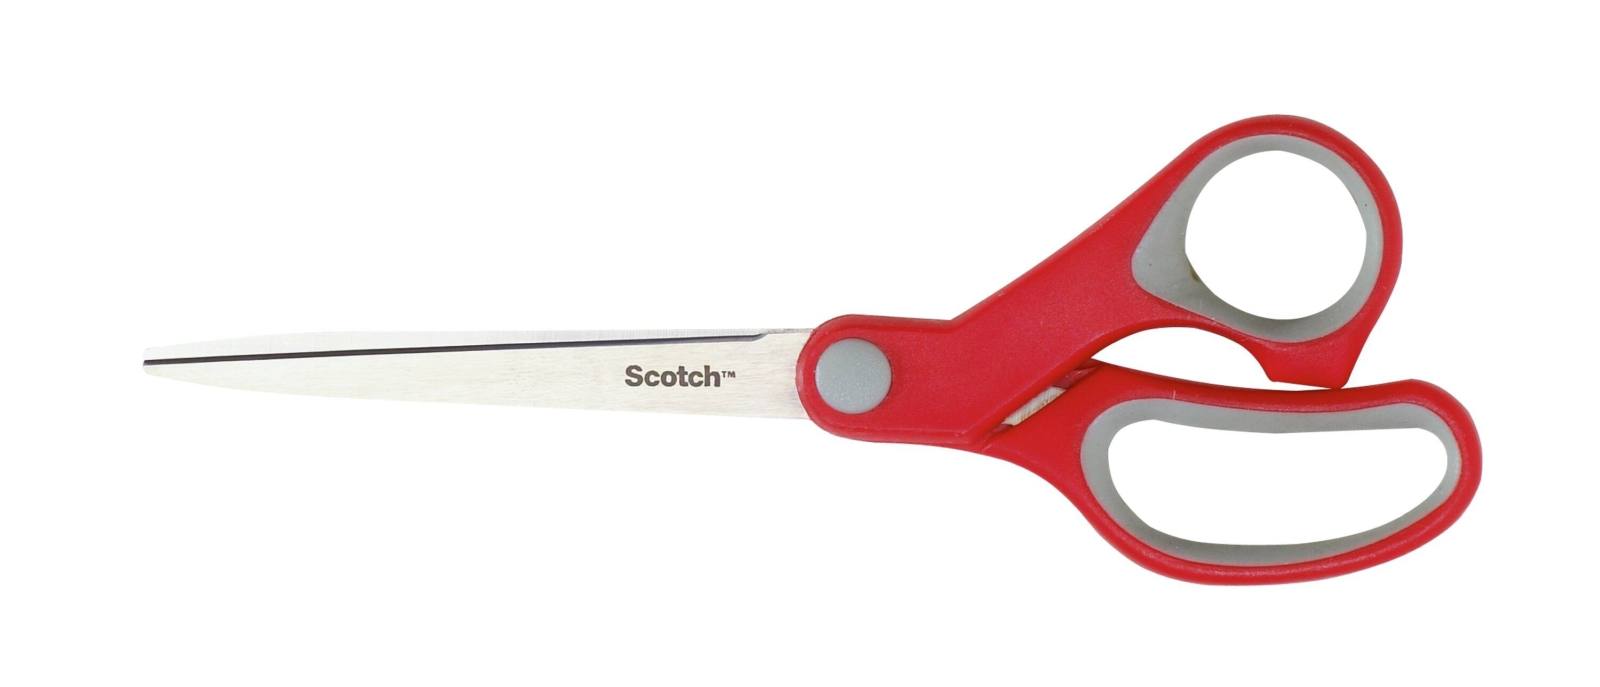 3M Scotch comfort scissors 1 per pack red 18 cm